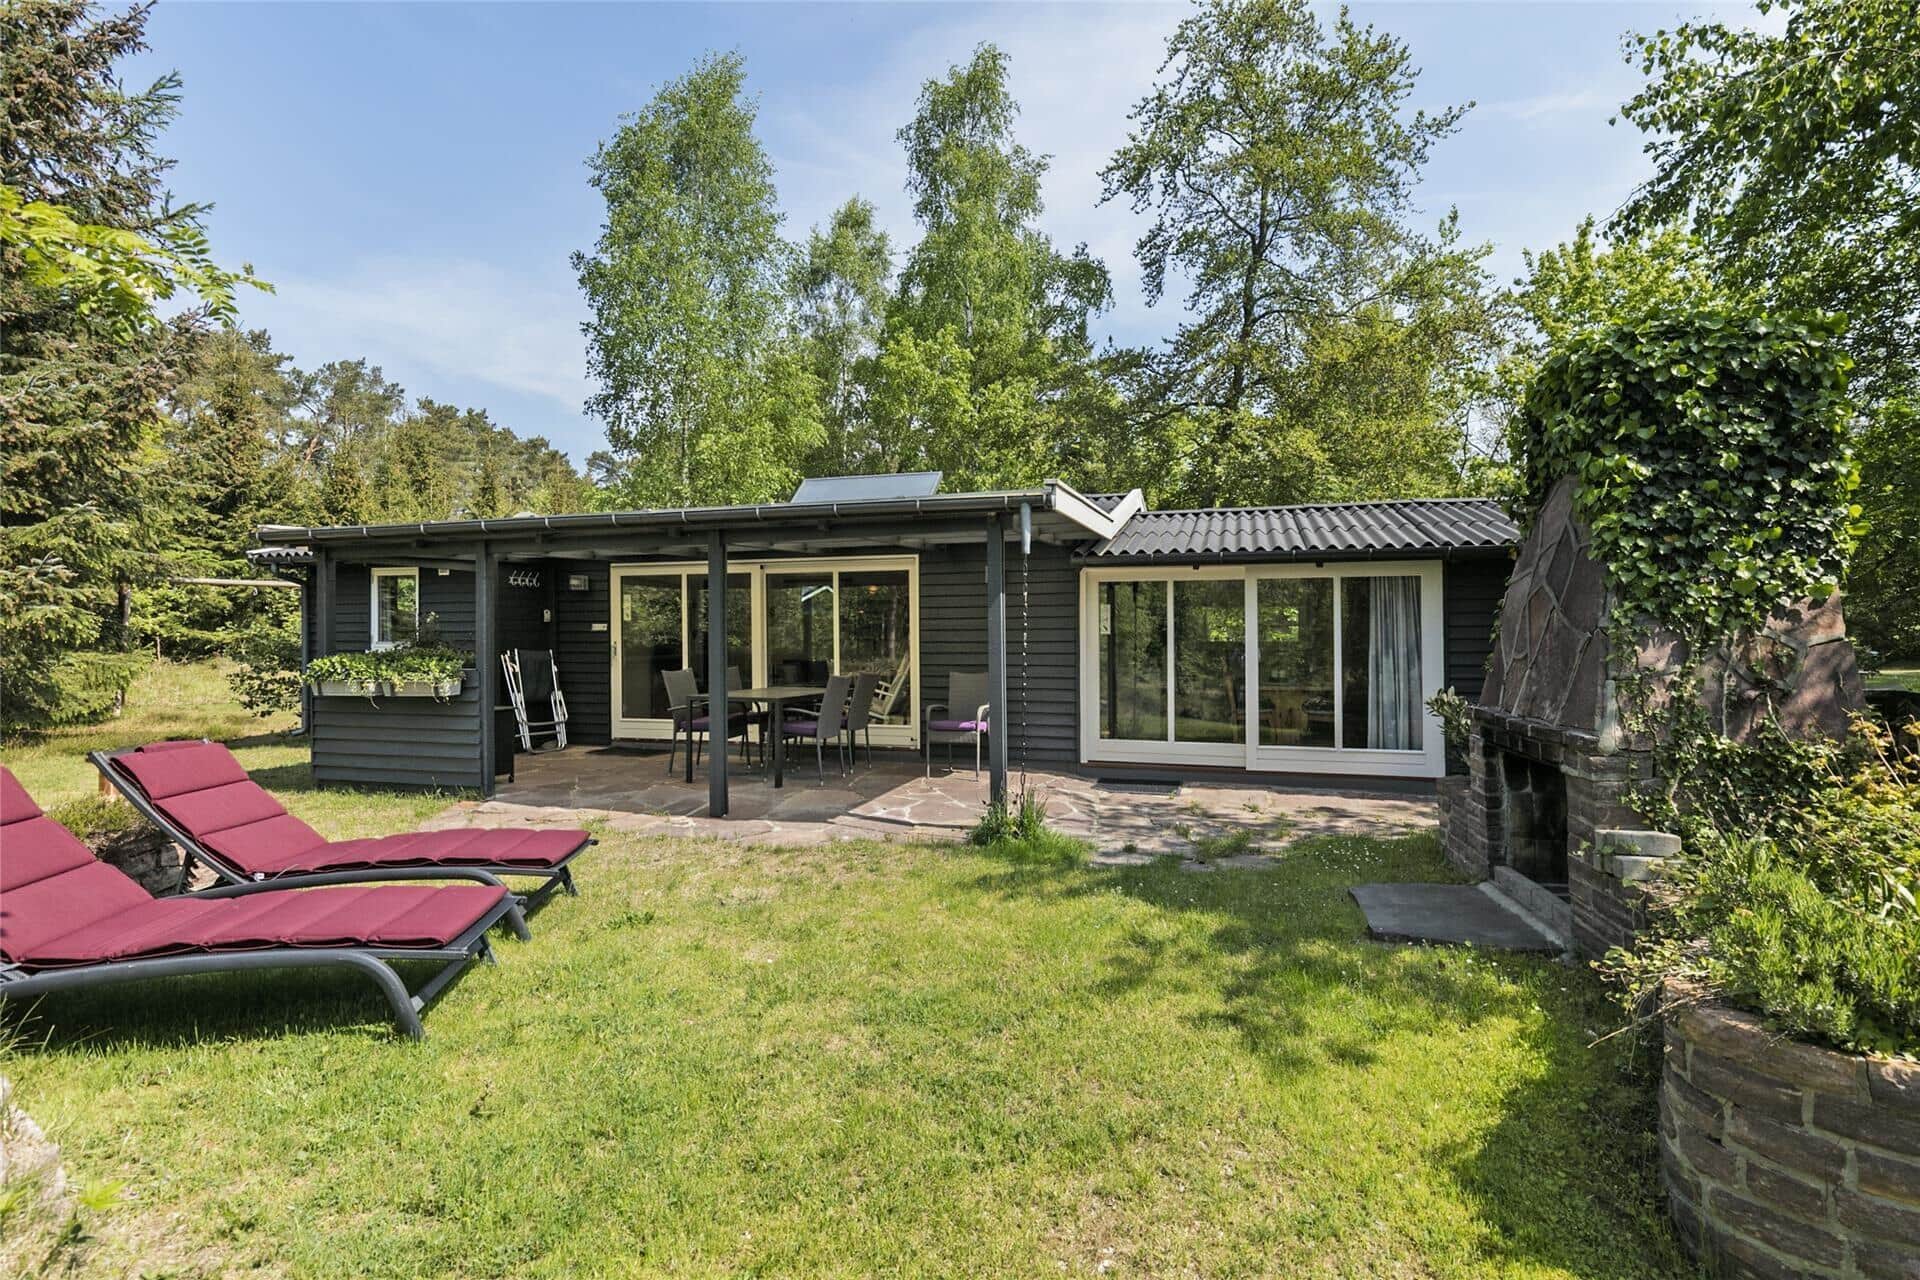 Image 0-10 Holiday-home 1307, Fyrrebakken 19, DK - 3720 Aakirkeby